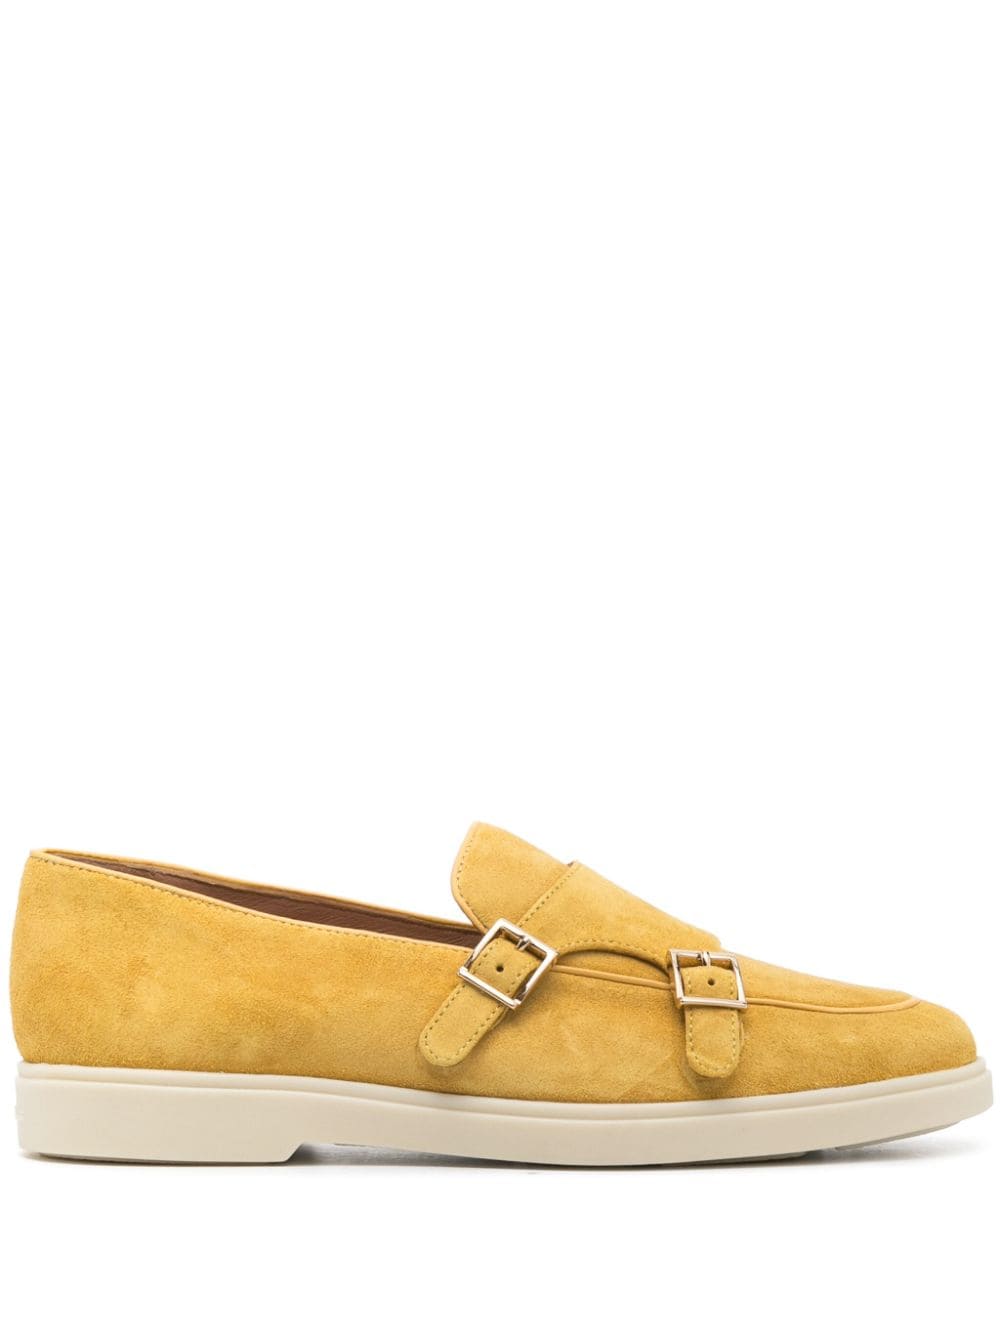 Santoni rubber-sole monk shoes - Yellow von Santoni